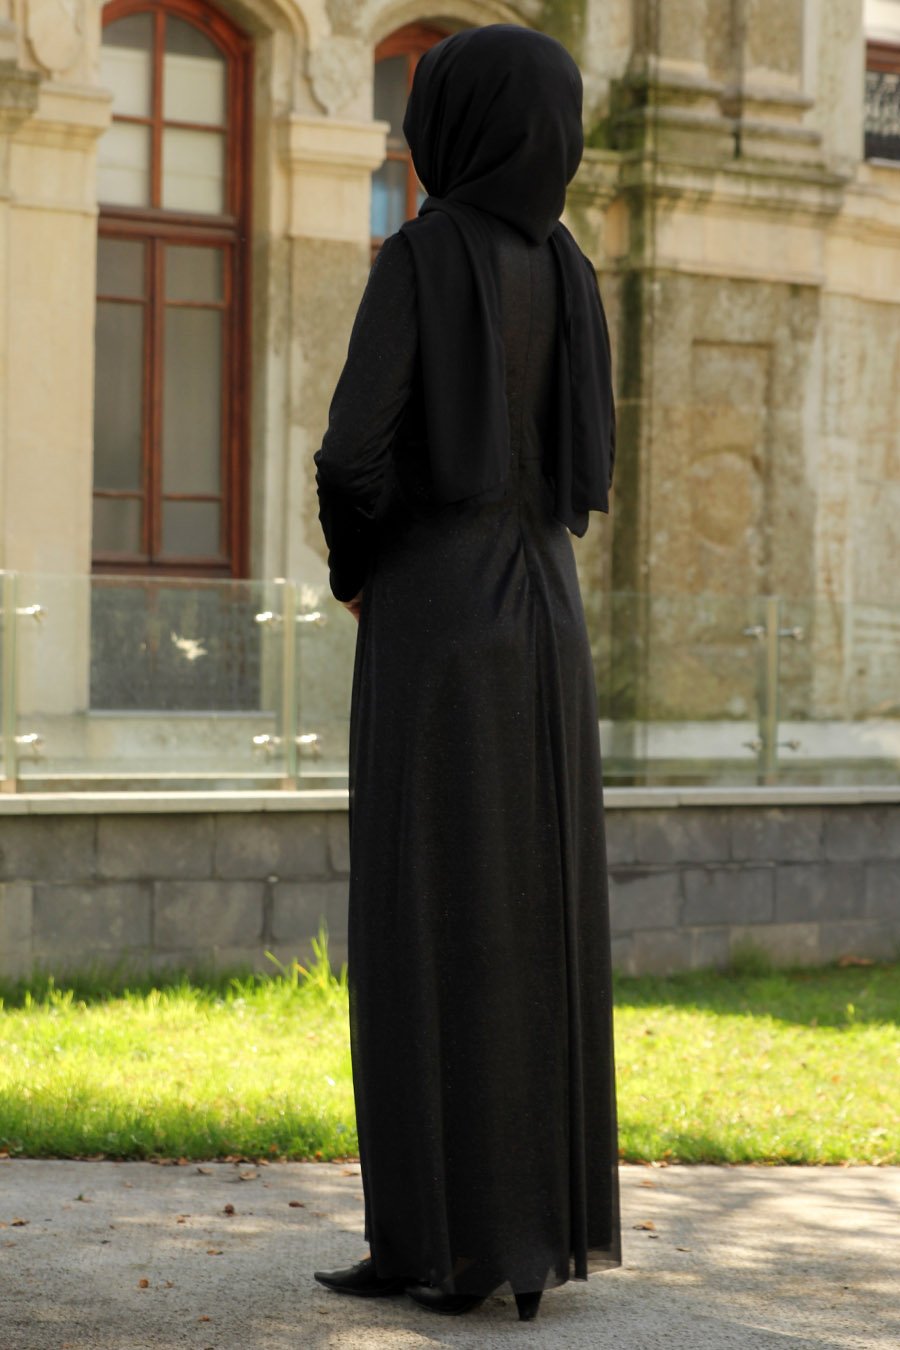 Nervür Detaylı Simli Tesettür Abiye Elbise - Siyah